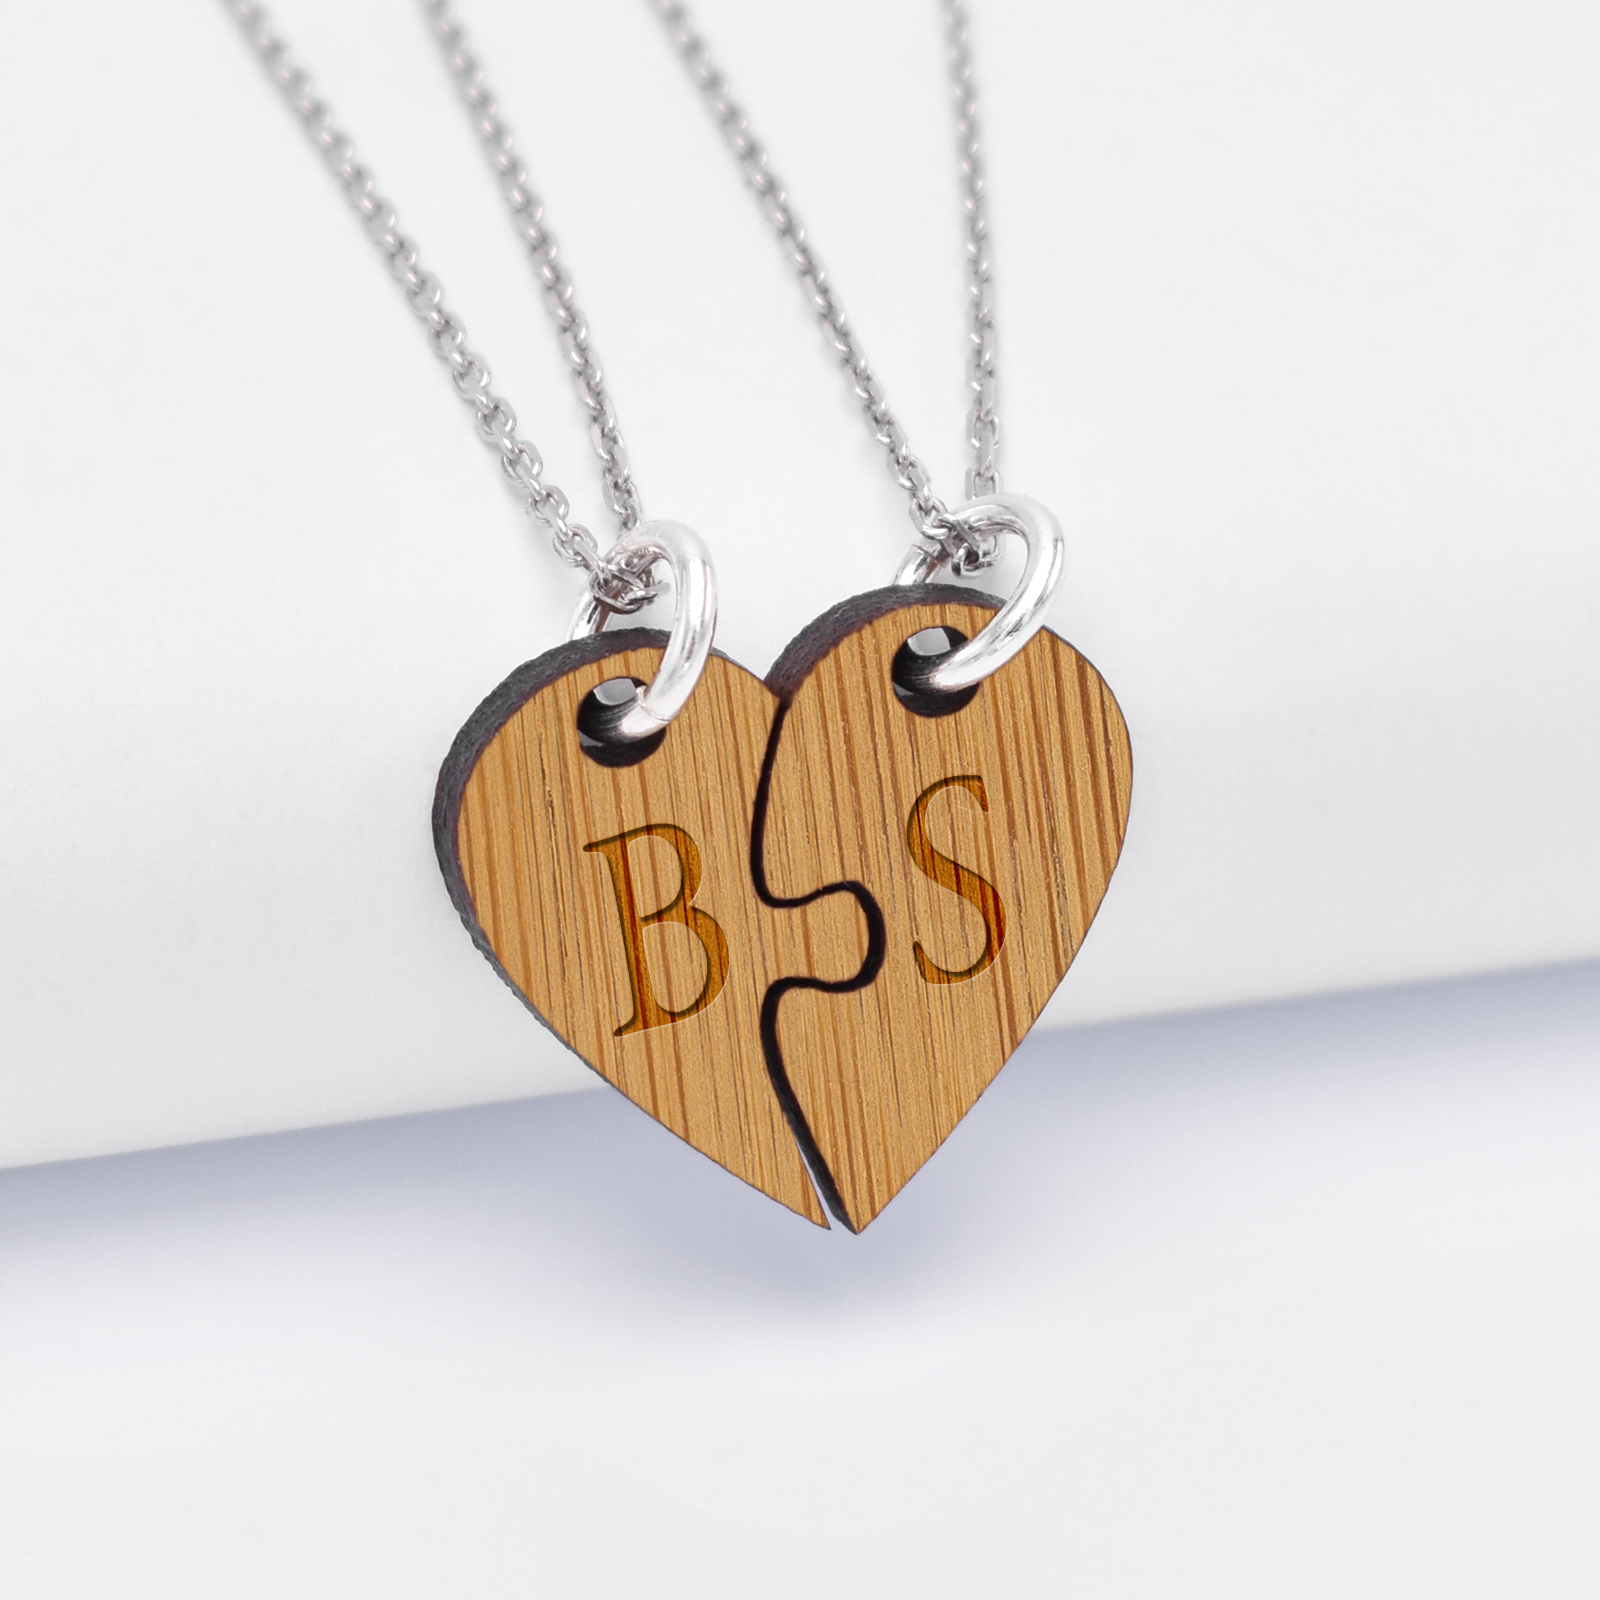 Duo de pendentif personnalisé médailles gravées bois initiales "cœur inséparable"- initiales BS